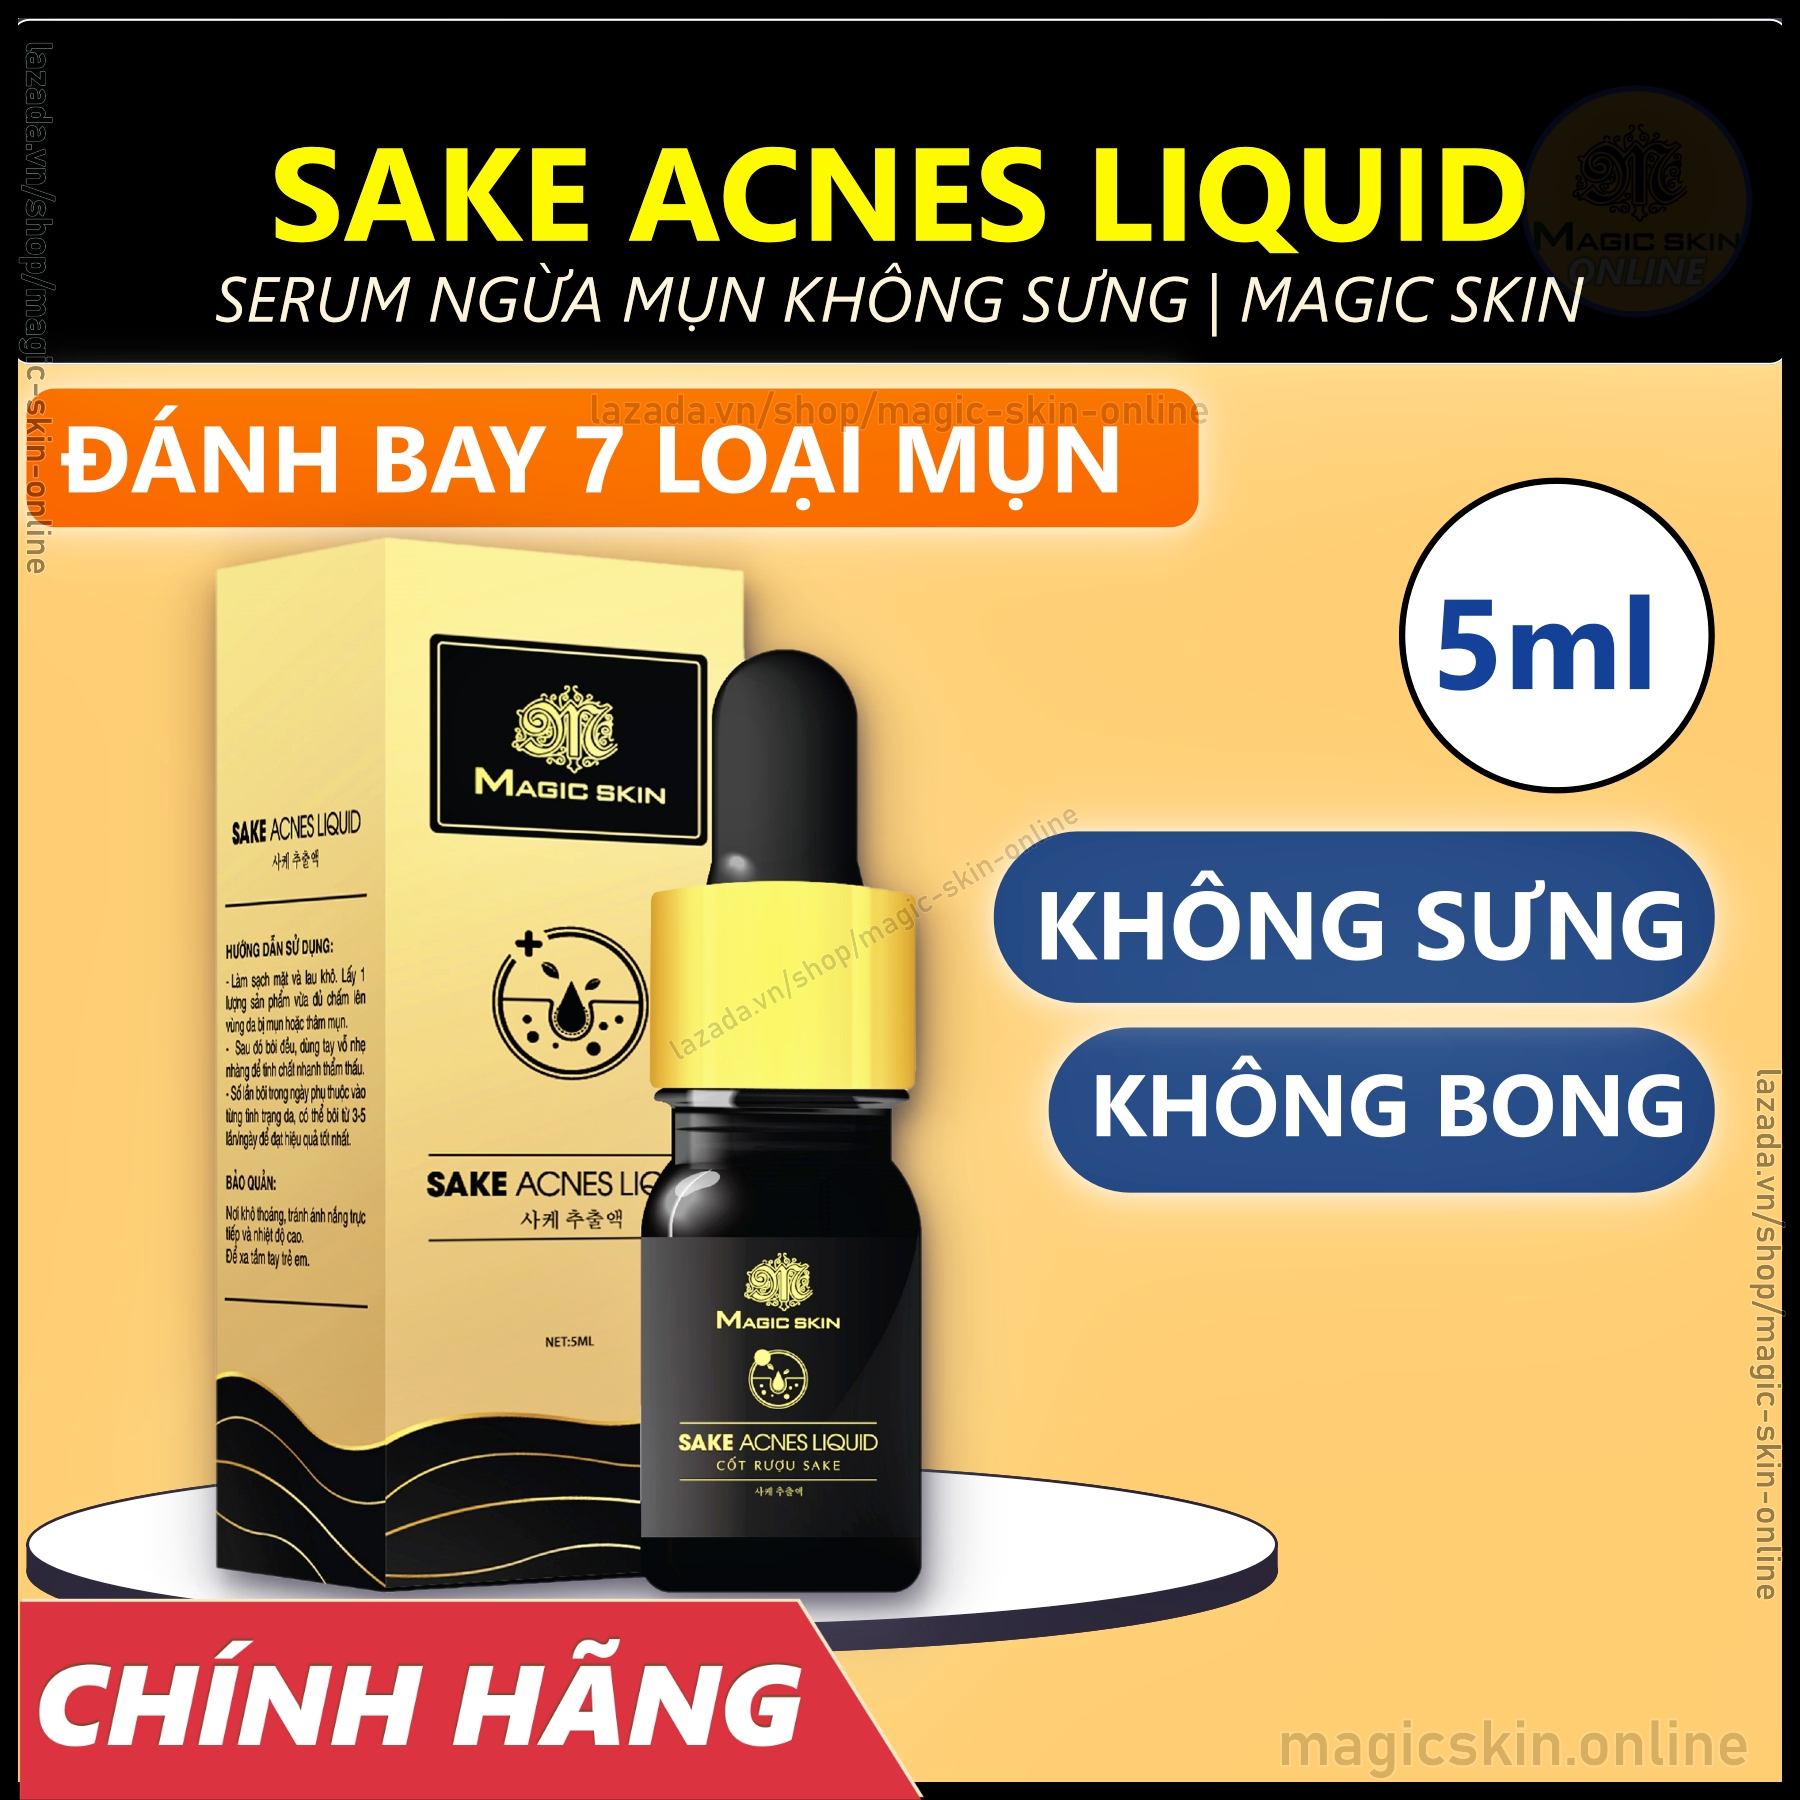 Serum ngừa mụn Magic Skin cốt rượu Sake Acnes Liquid | CHÍNH HÃNG | KHÔNG SƯNG BONG